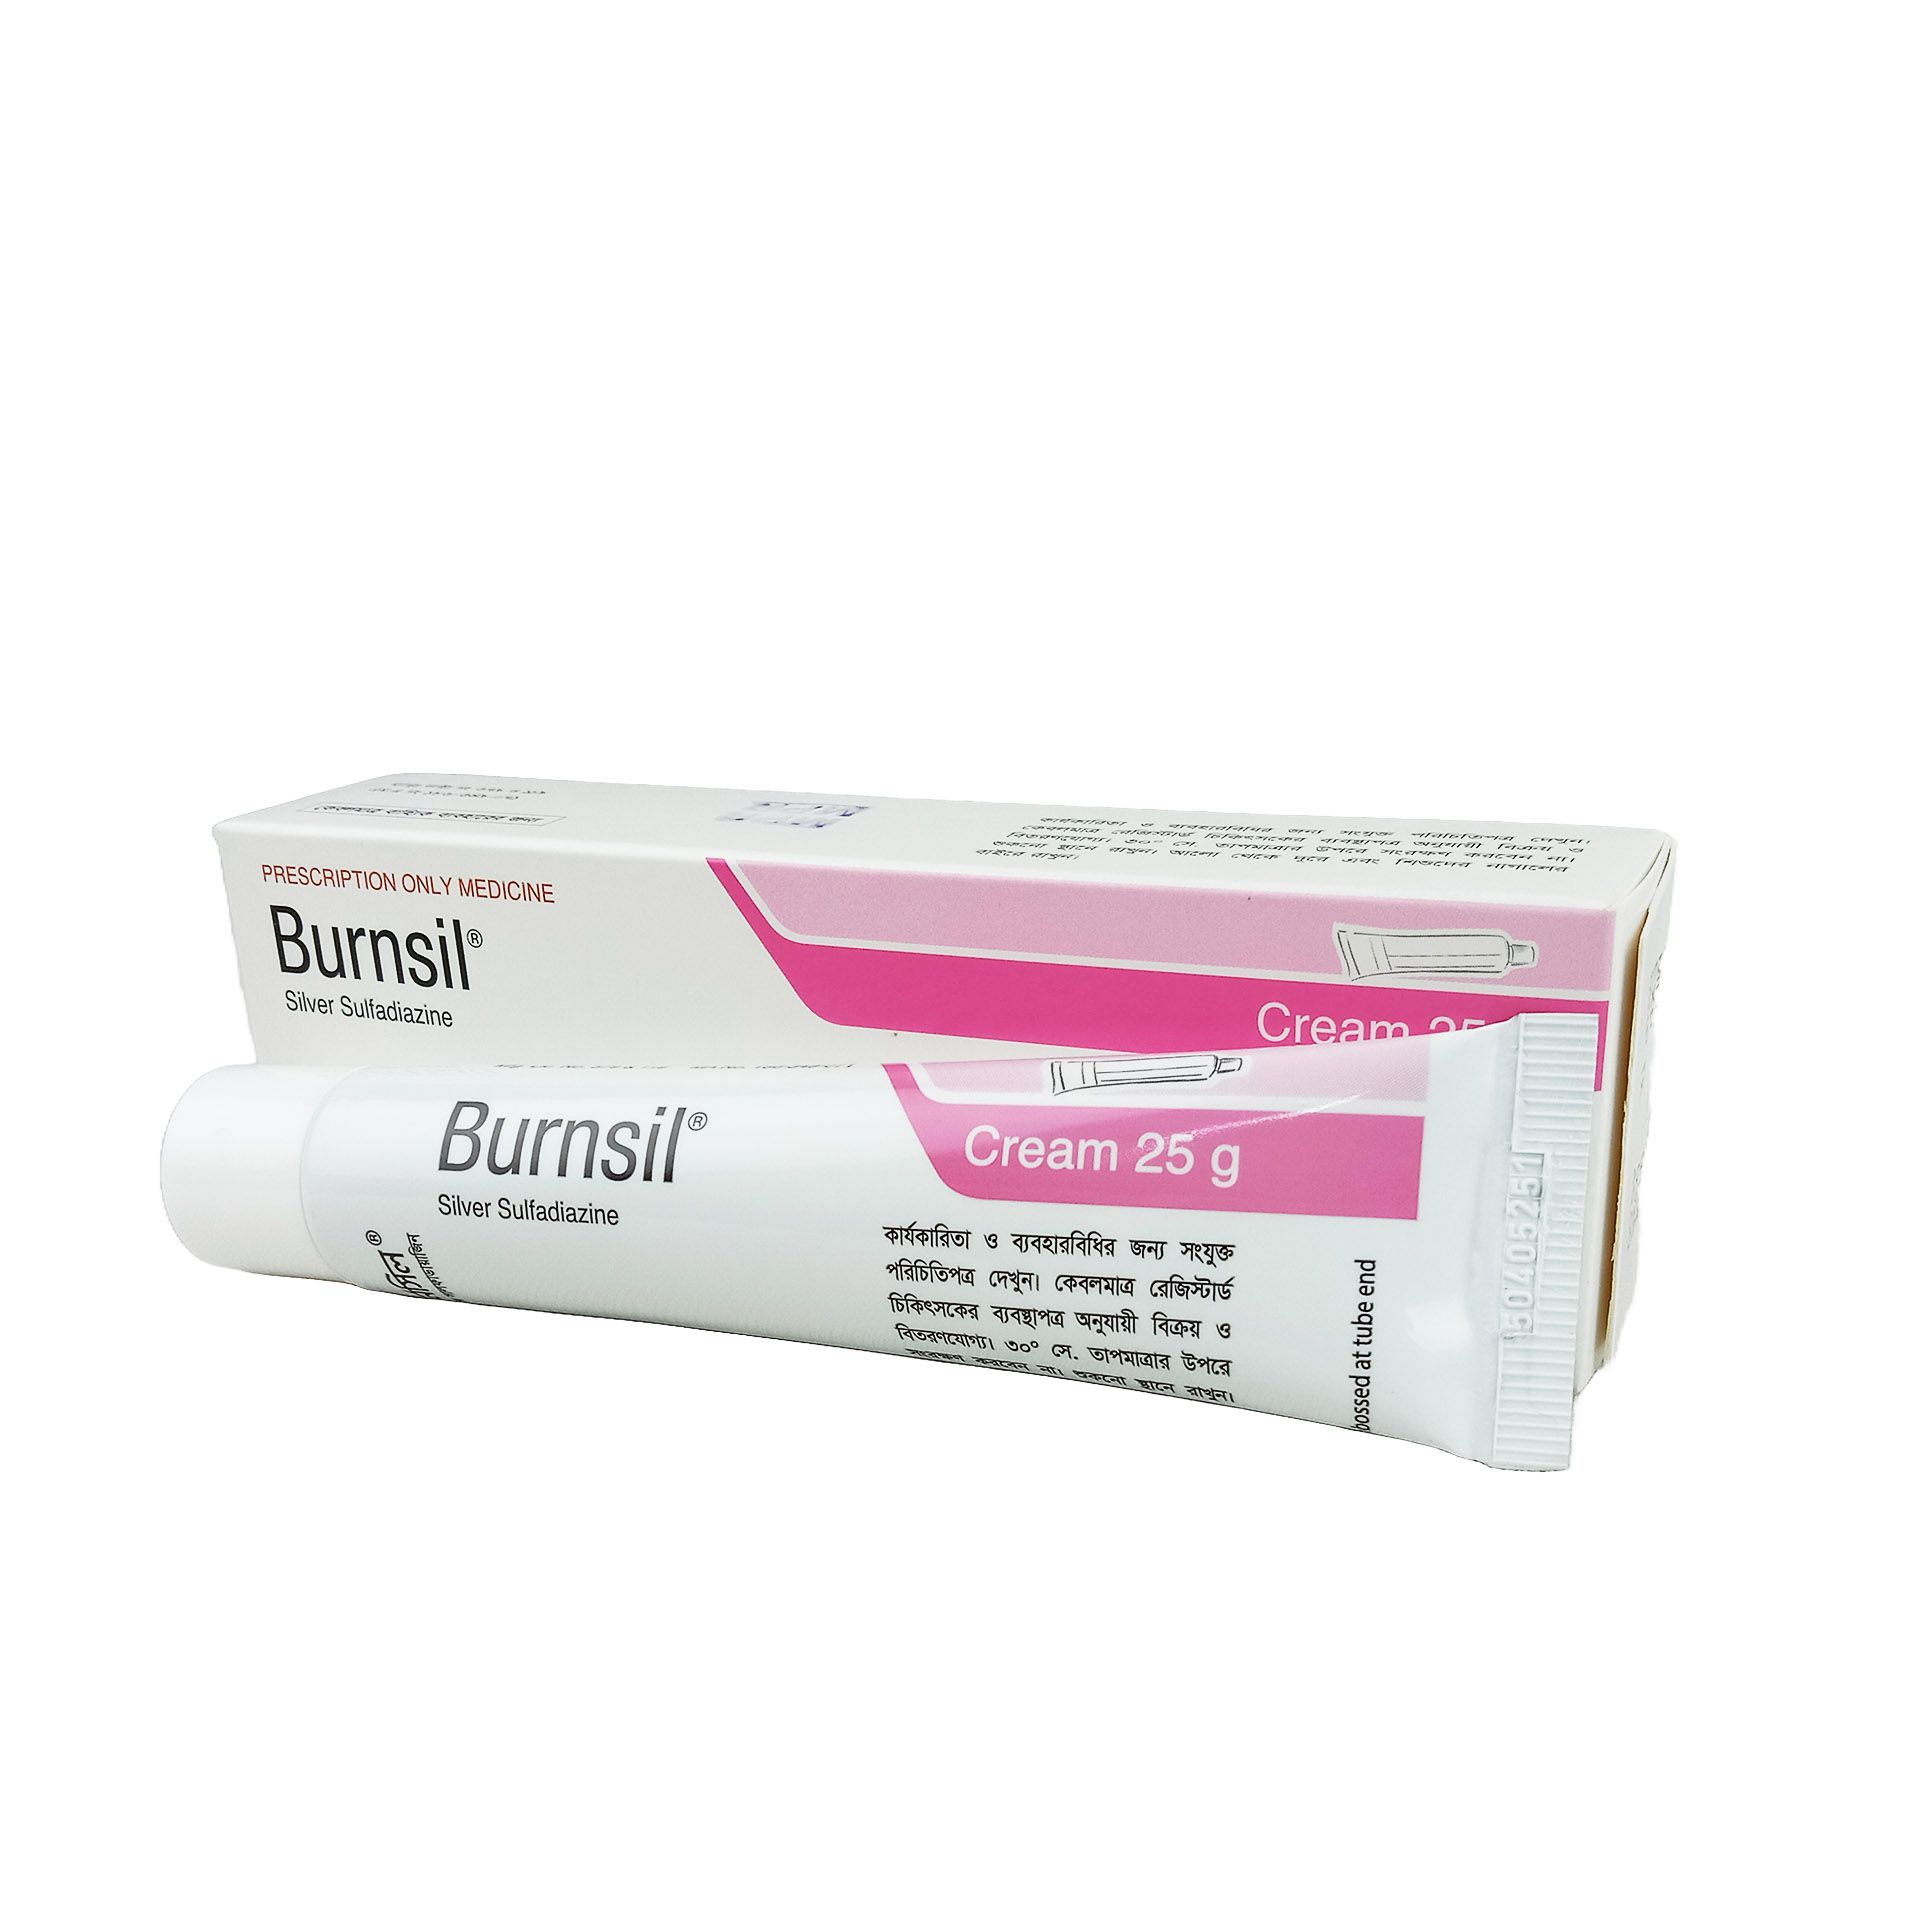 Burnsil 1% 1% Cream